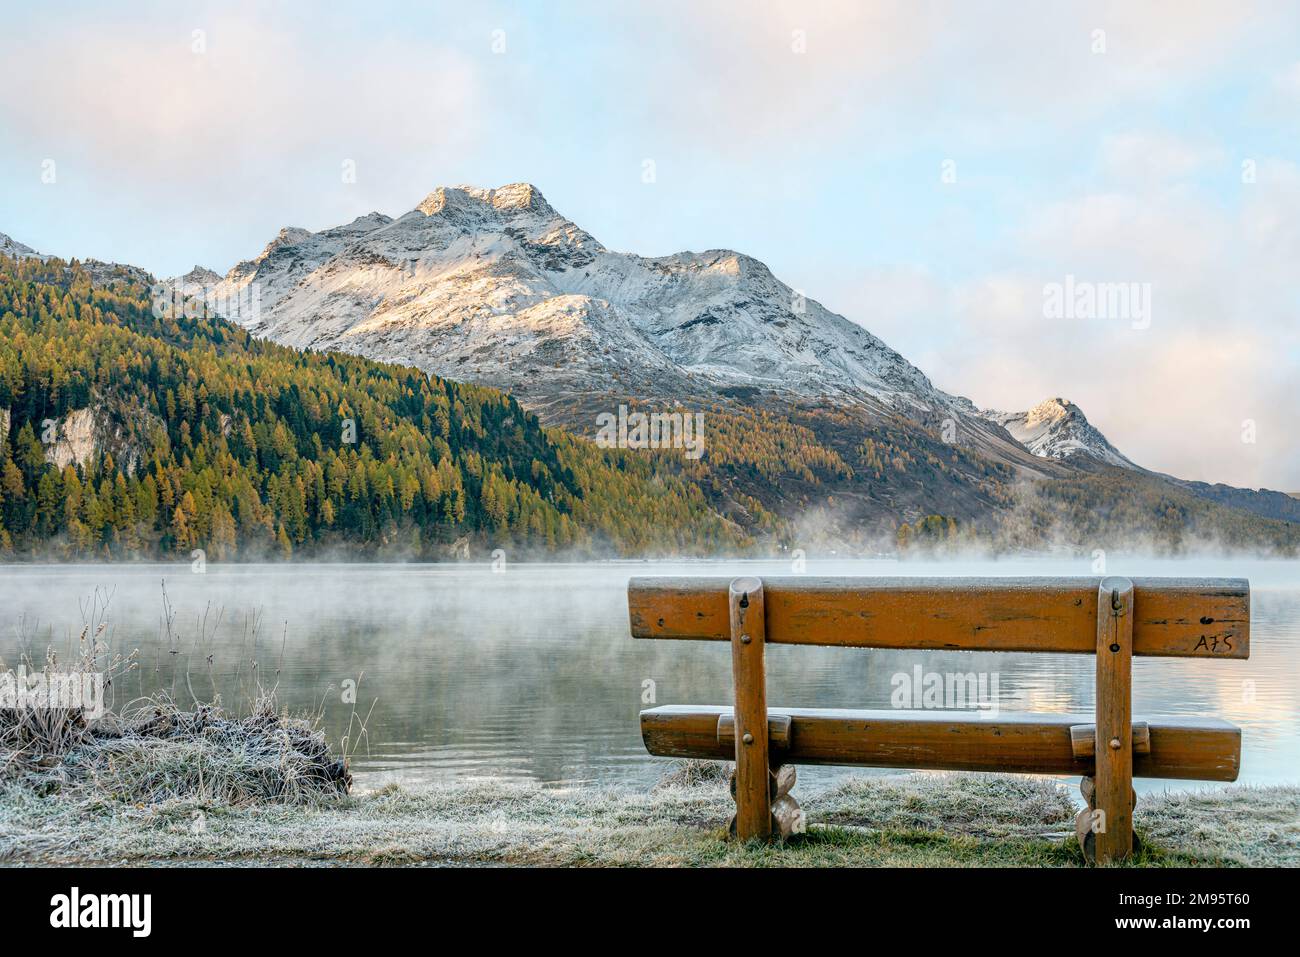 Einsame und leere Bank in Herbstlandschaft am Lake Sils, Engadine, Schweiz, mit Piz Margna im Hintergrund Stockfoto